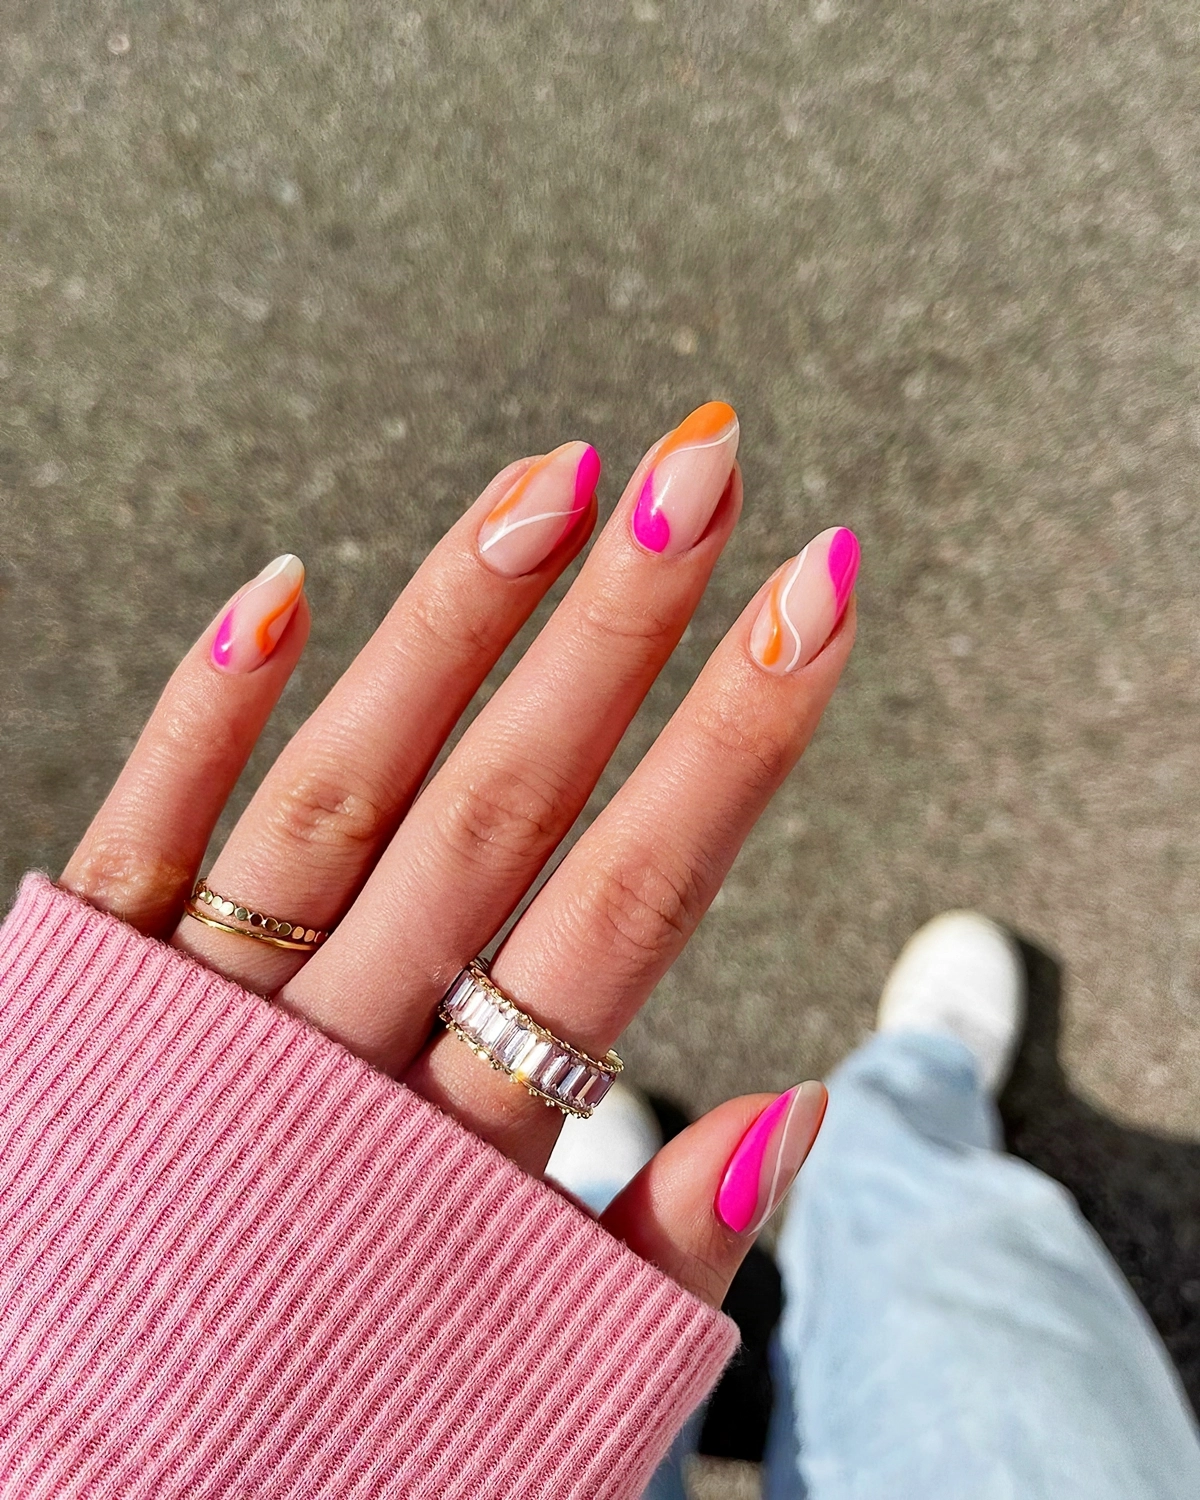 french nails farbig swirl naegel design rosa und orange heluviee